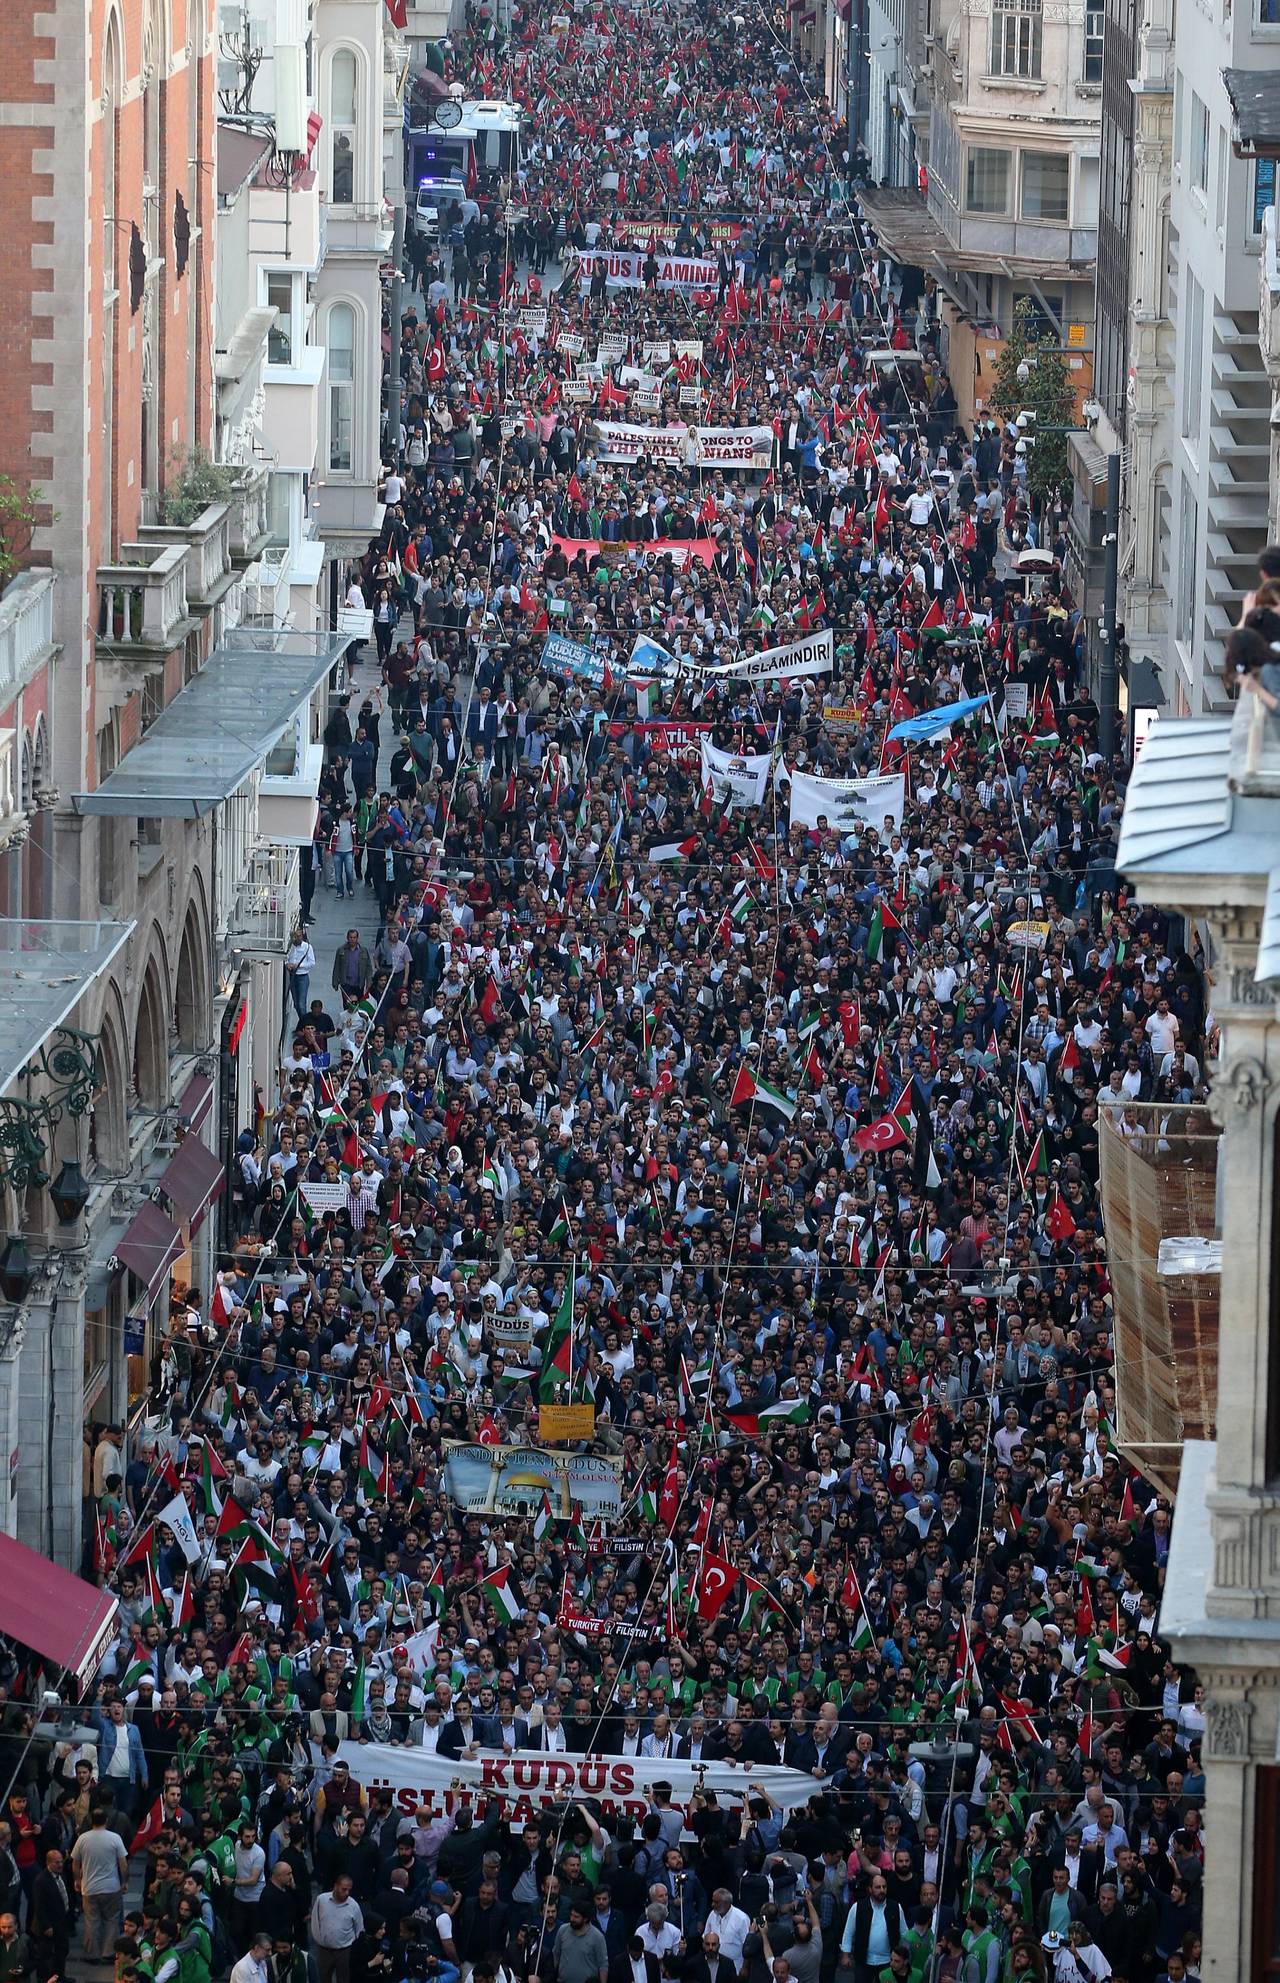 Condena global. Numerosas personas gritaron consignas contra Israel durante una manifestación convocada en Estambul. (AP)